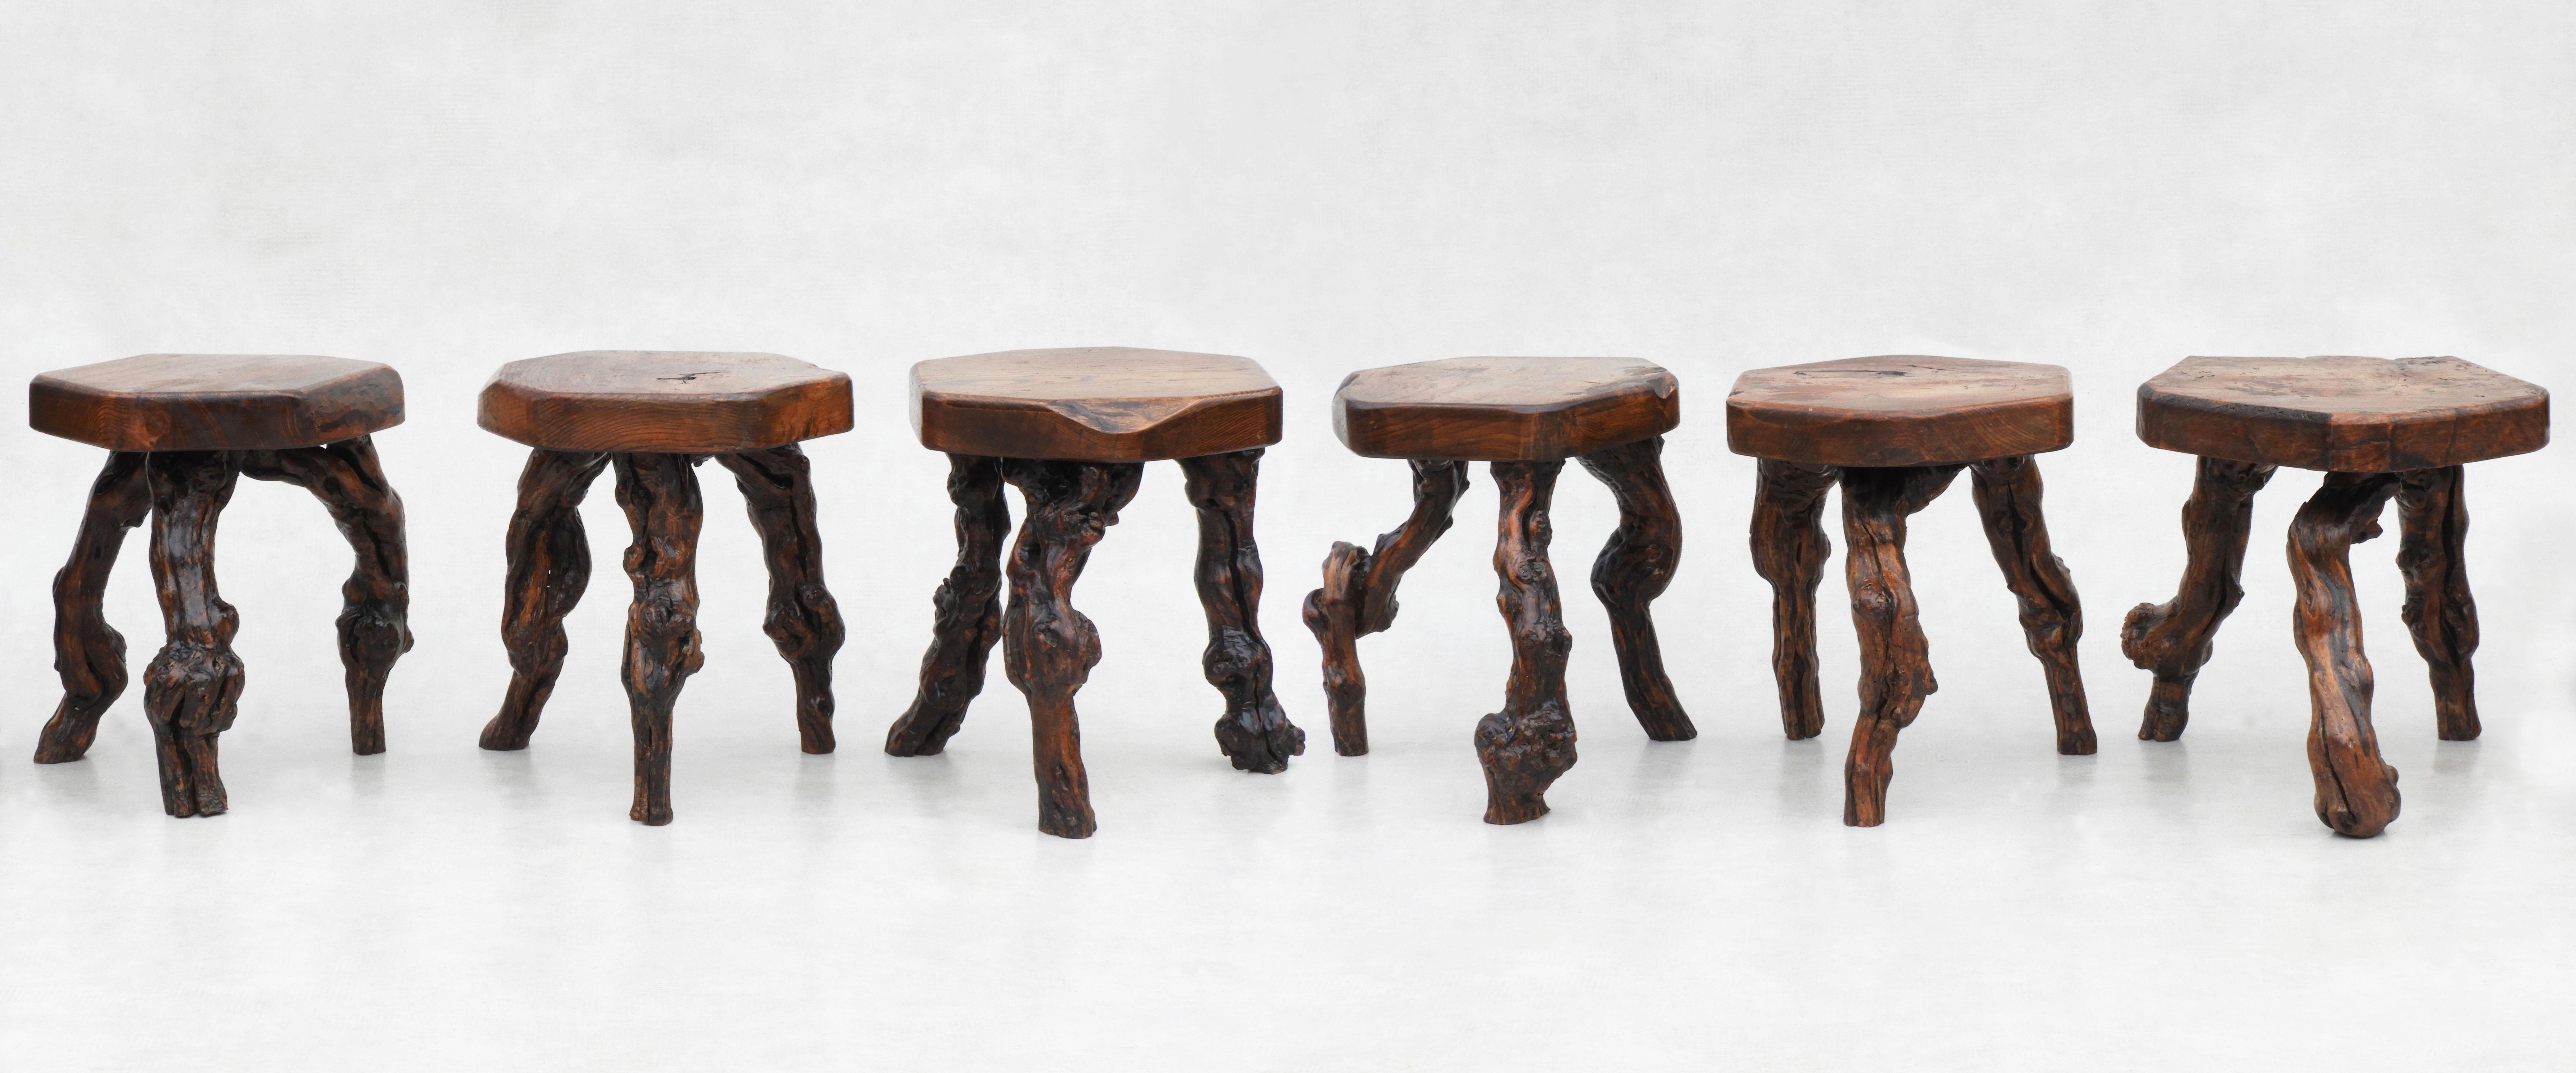 Brutalist Vine Wood Tripod Stools, Side Tables, Nightstands, C1950, France